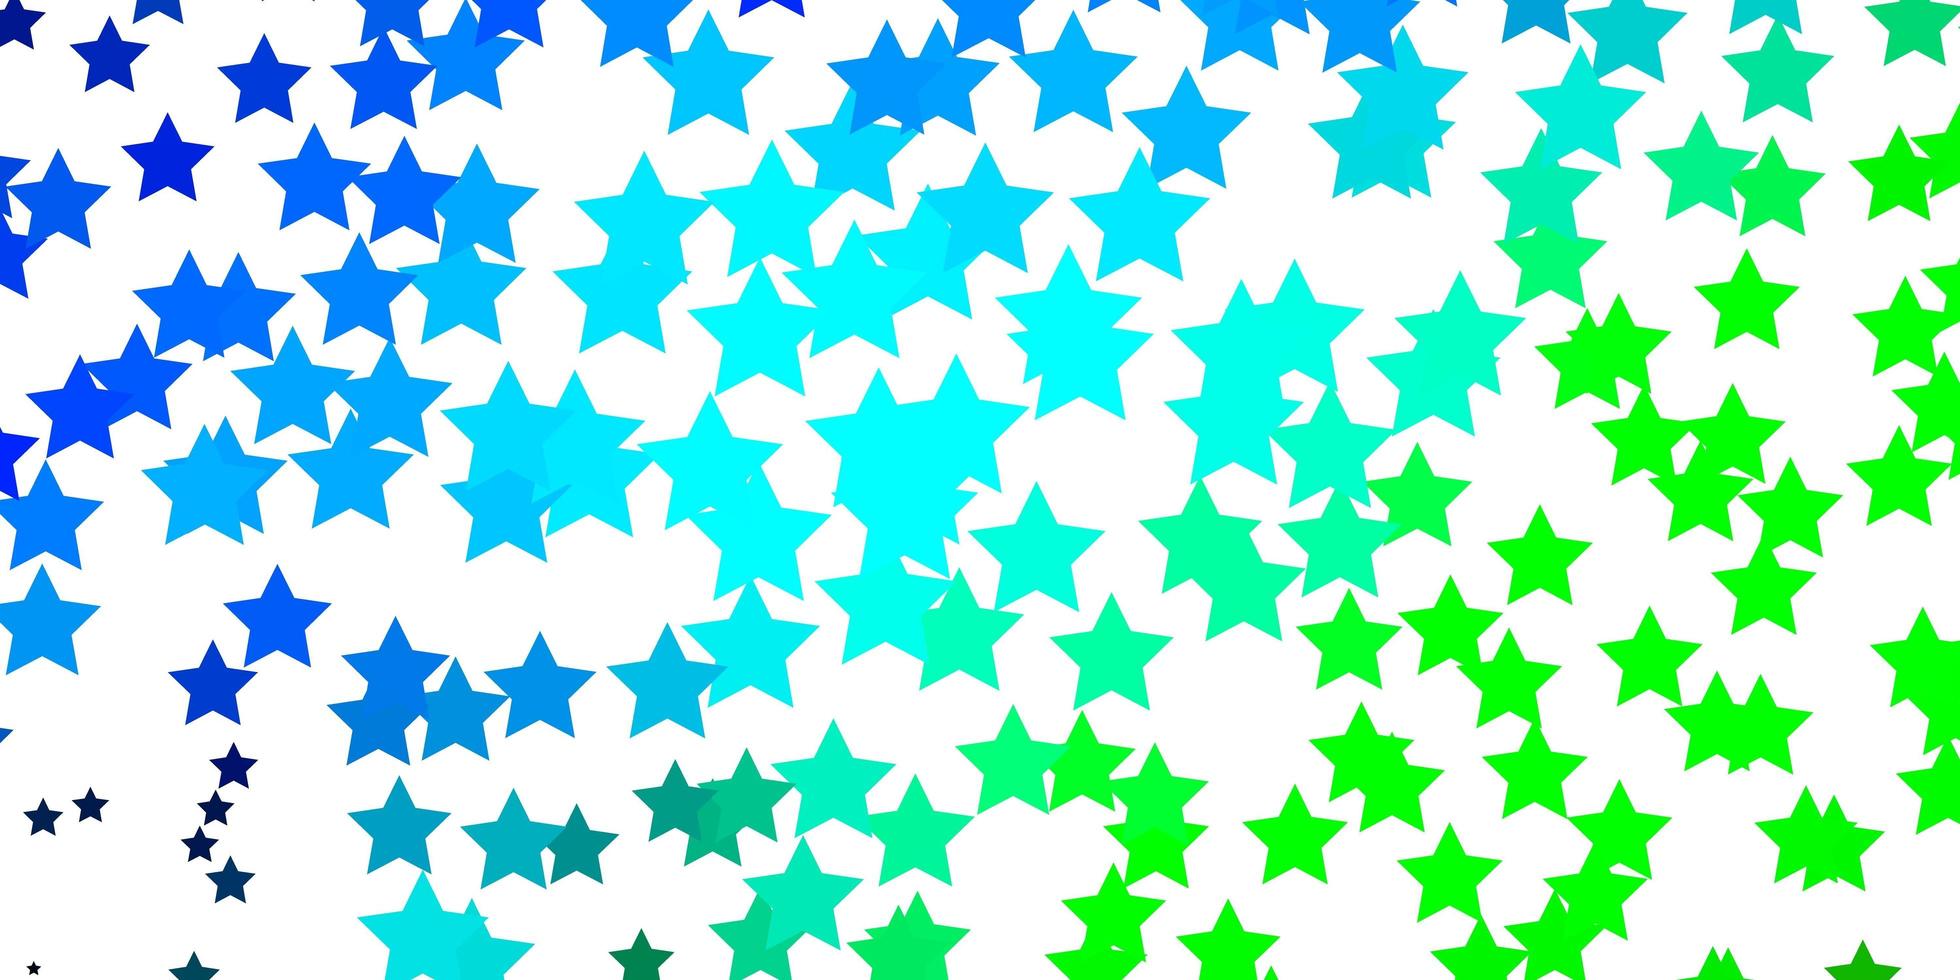 padrão de vetor azul claro e verde com estrelas abstratas